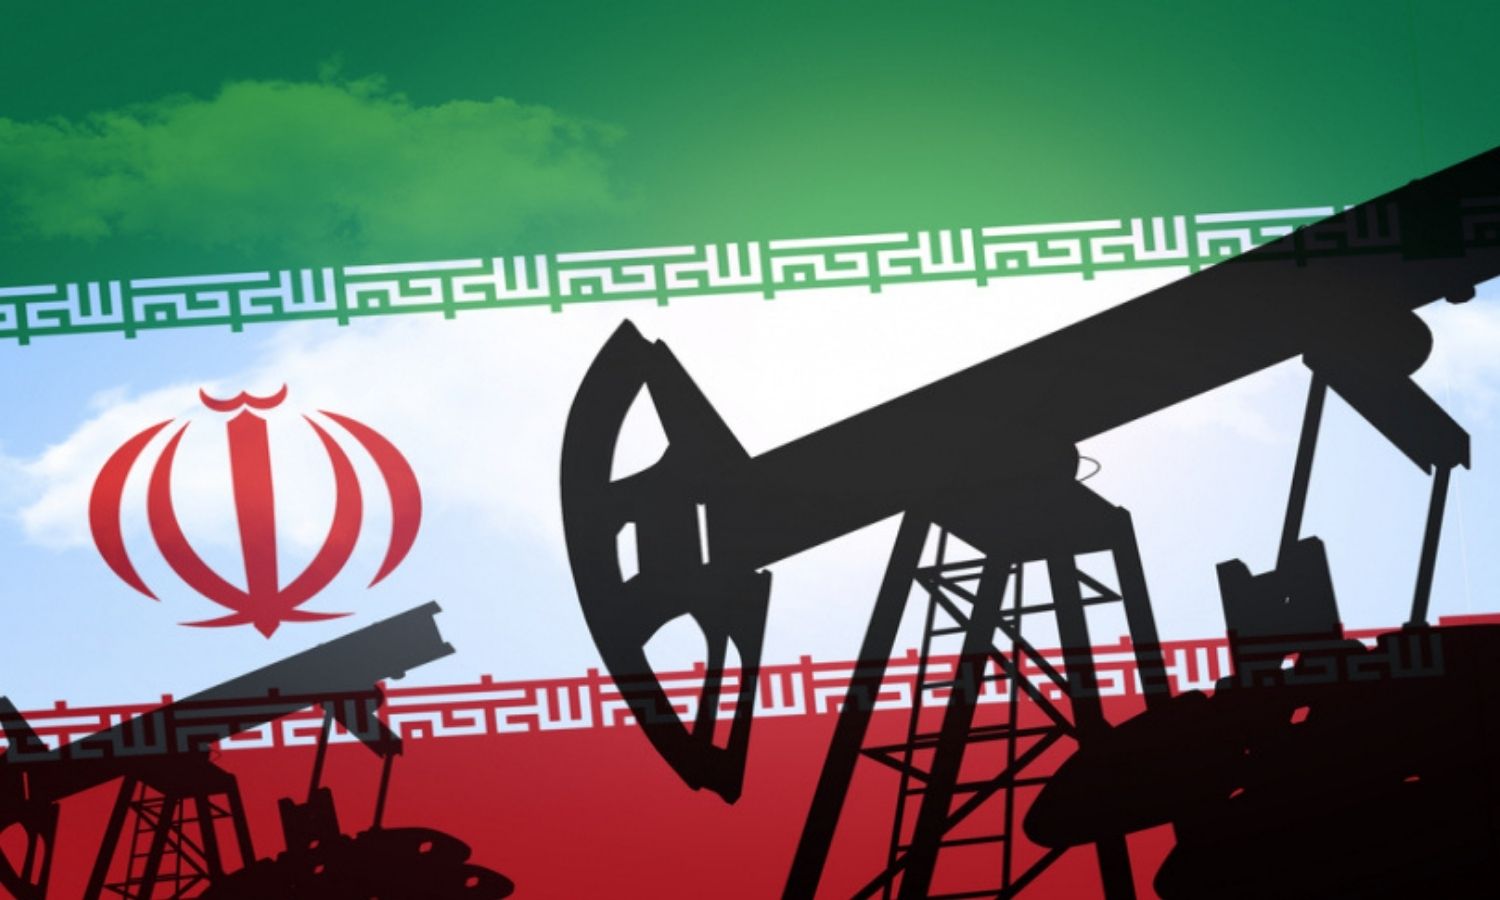 İran’ın Olası Saldırısı Konuşulurken Petrol Fiyatı Ne Durumda?